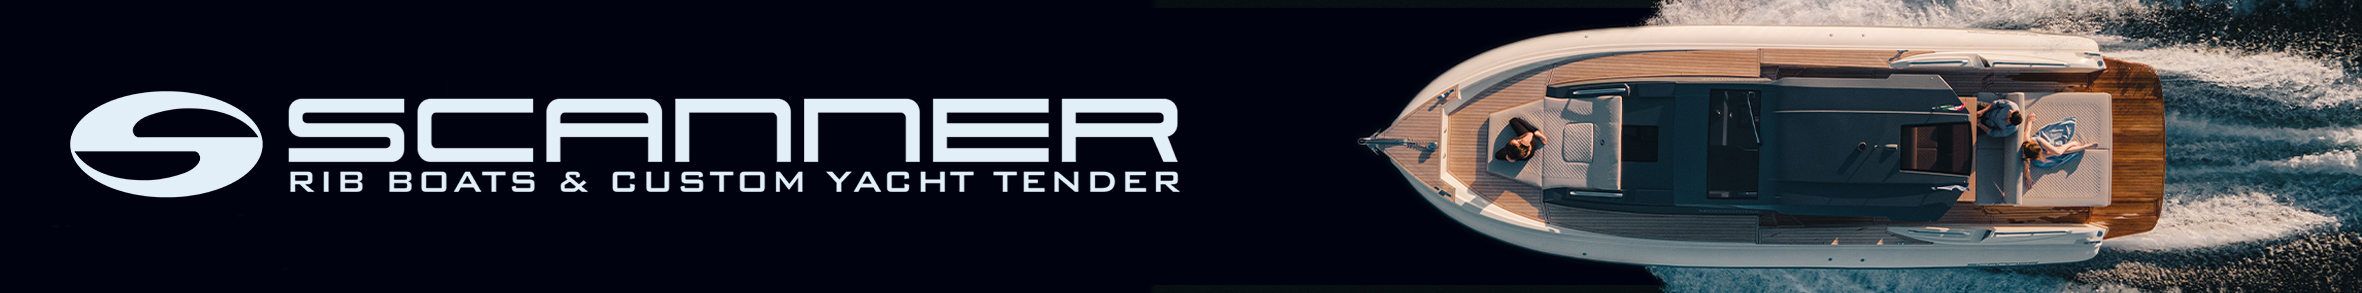 SCANNER newsbanner dal 8 settembre 2020 al 7 ottobre 2021